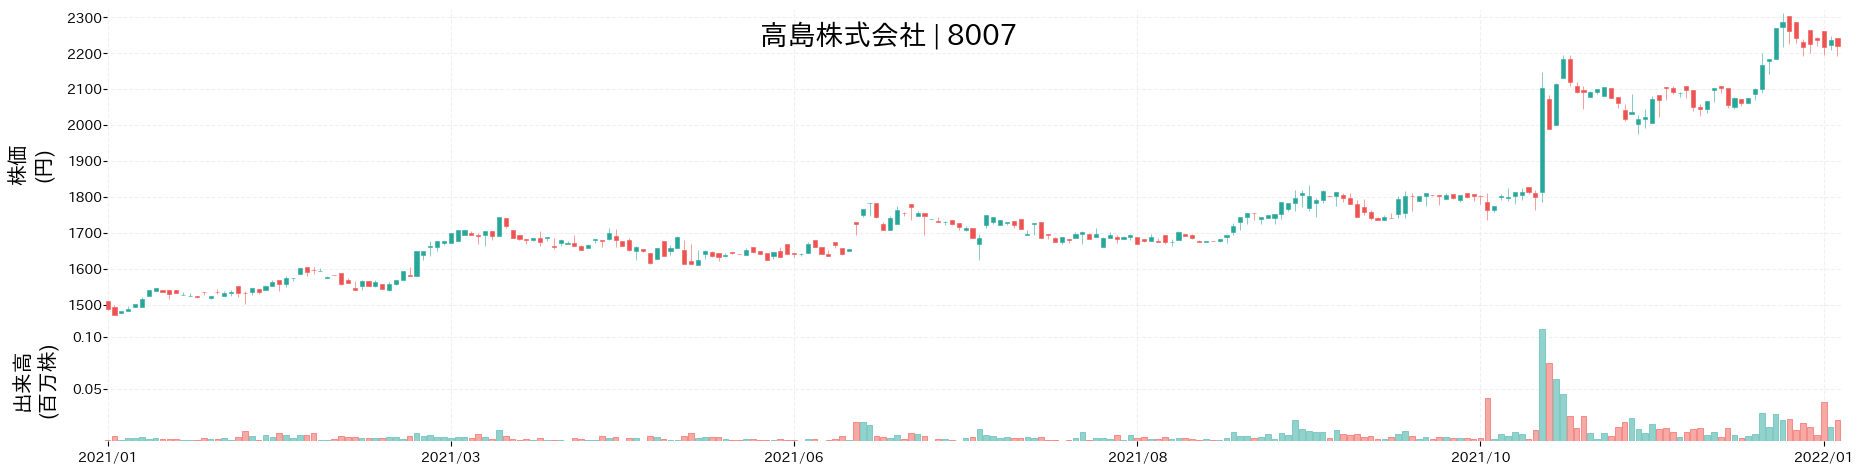 高島の株価推移(2021)